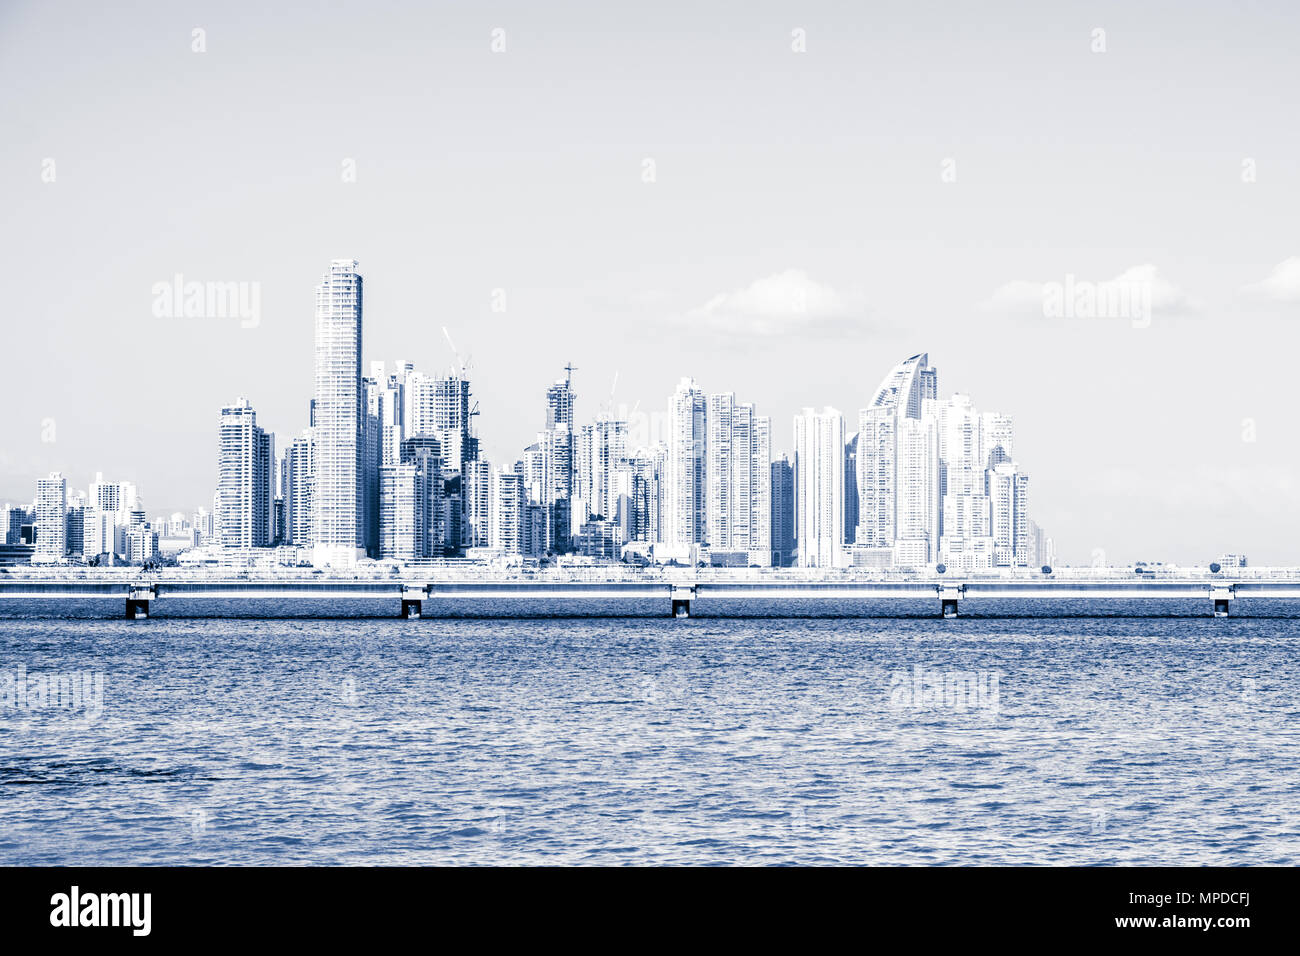 Panama City küstenansicht Skyline des Geschäftsviertels - Stockfoto